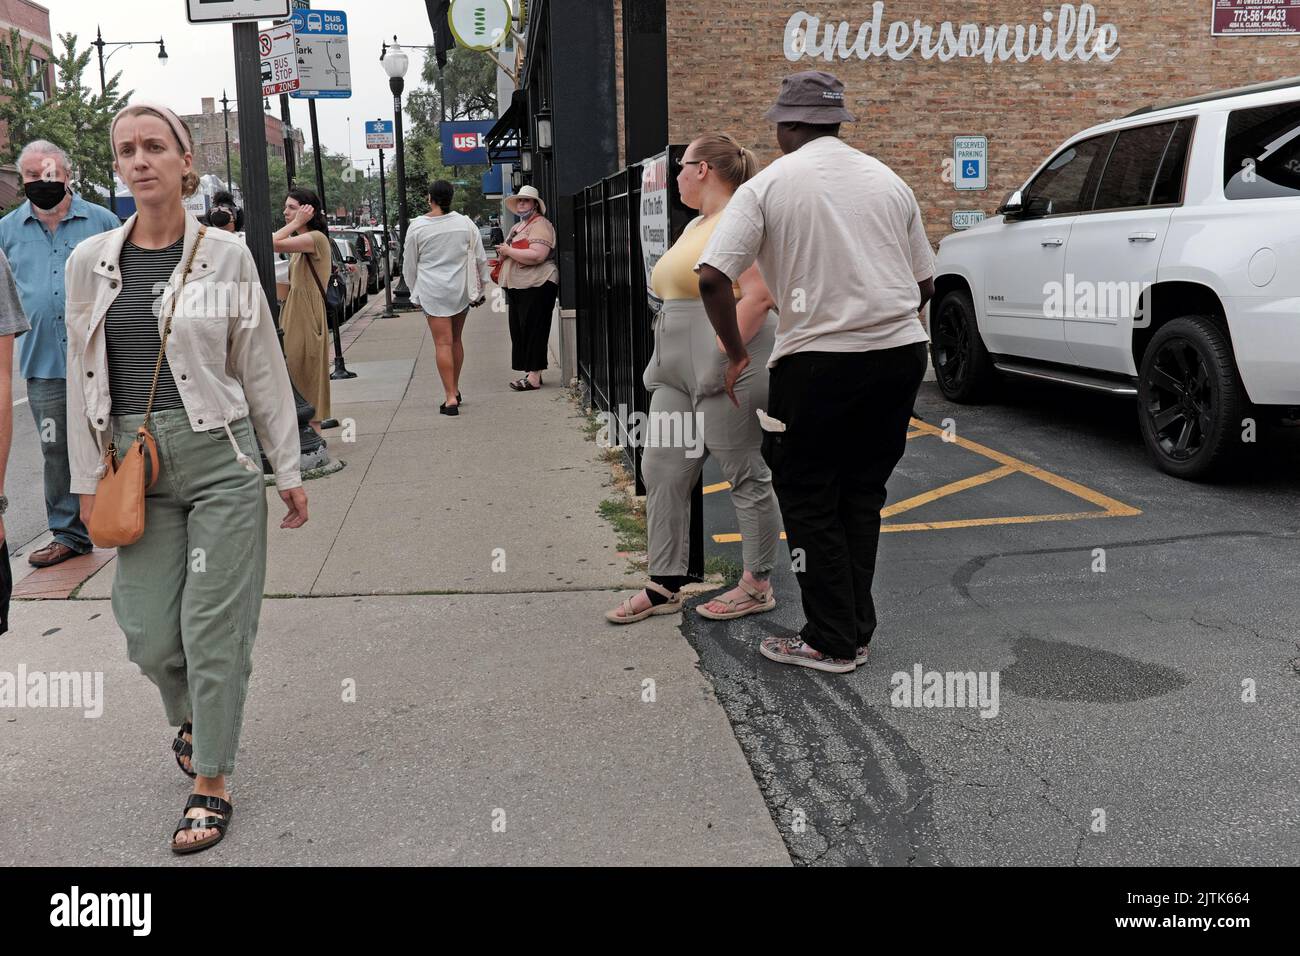 Le persone sui marciapiedi di Andersonville, Chicago, Illinois, creano un paesaggio vivace. Foto Stock